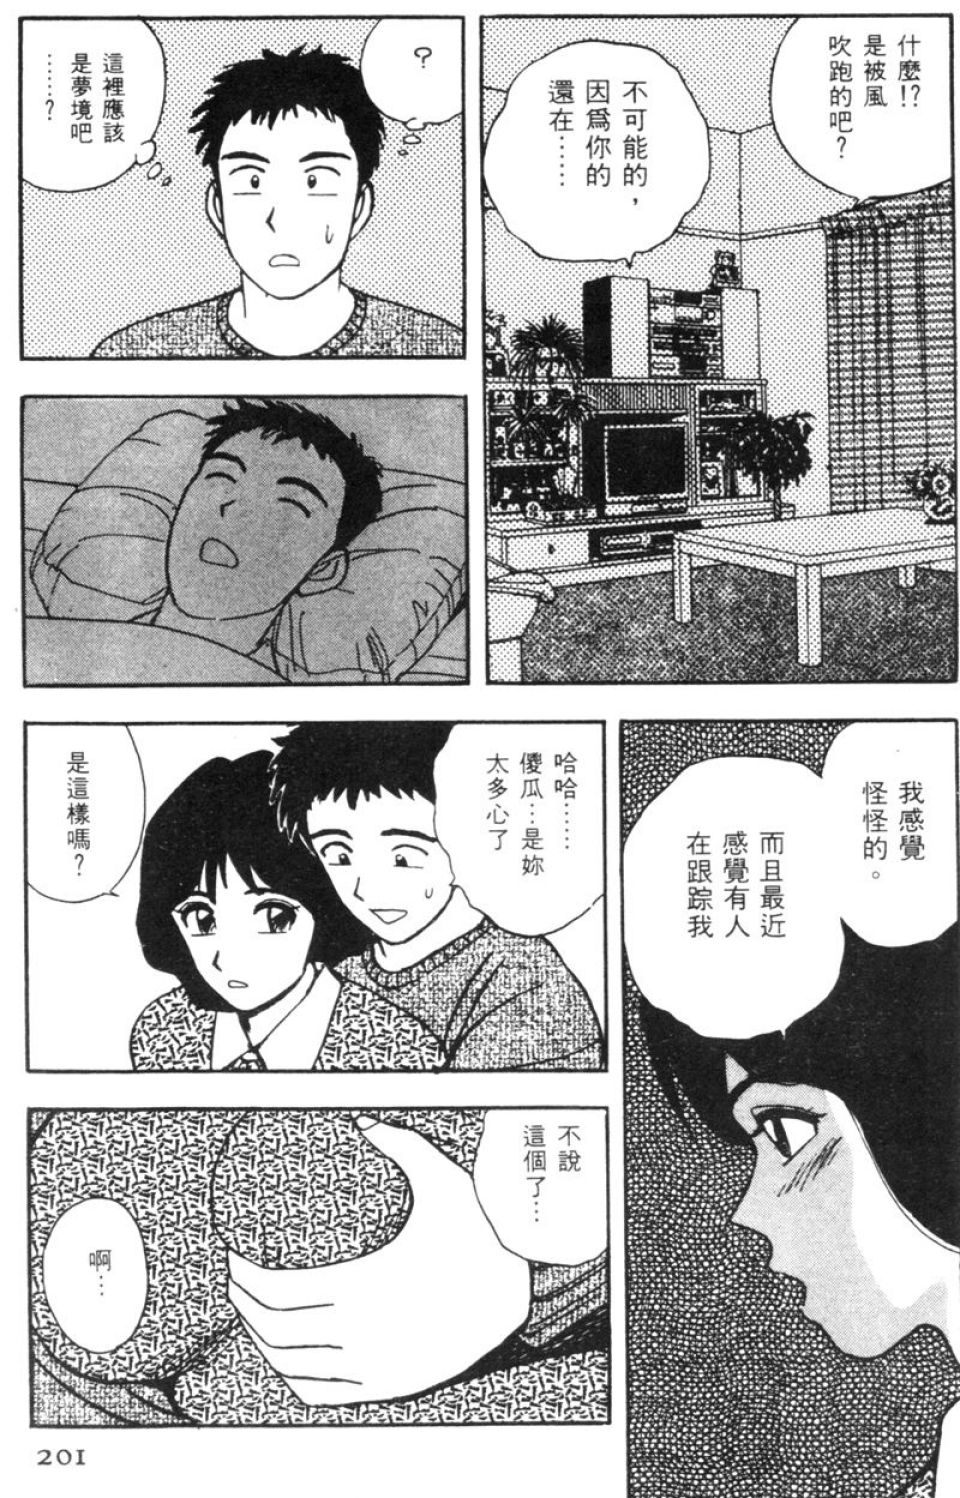 [Kitano Kenichi] Sexy Dreams Come True! Vol.1 (CN) 